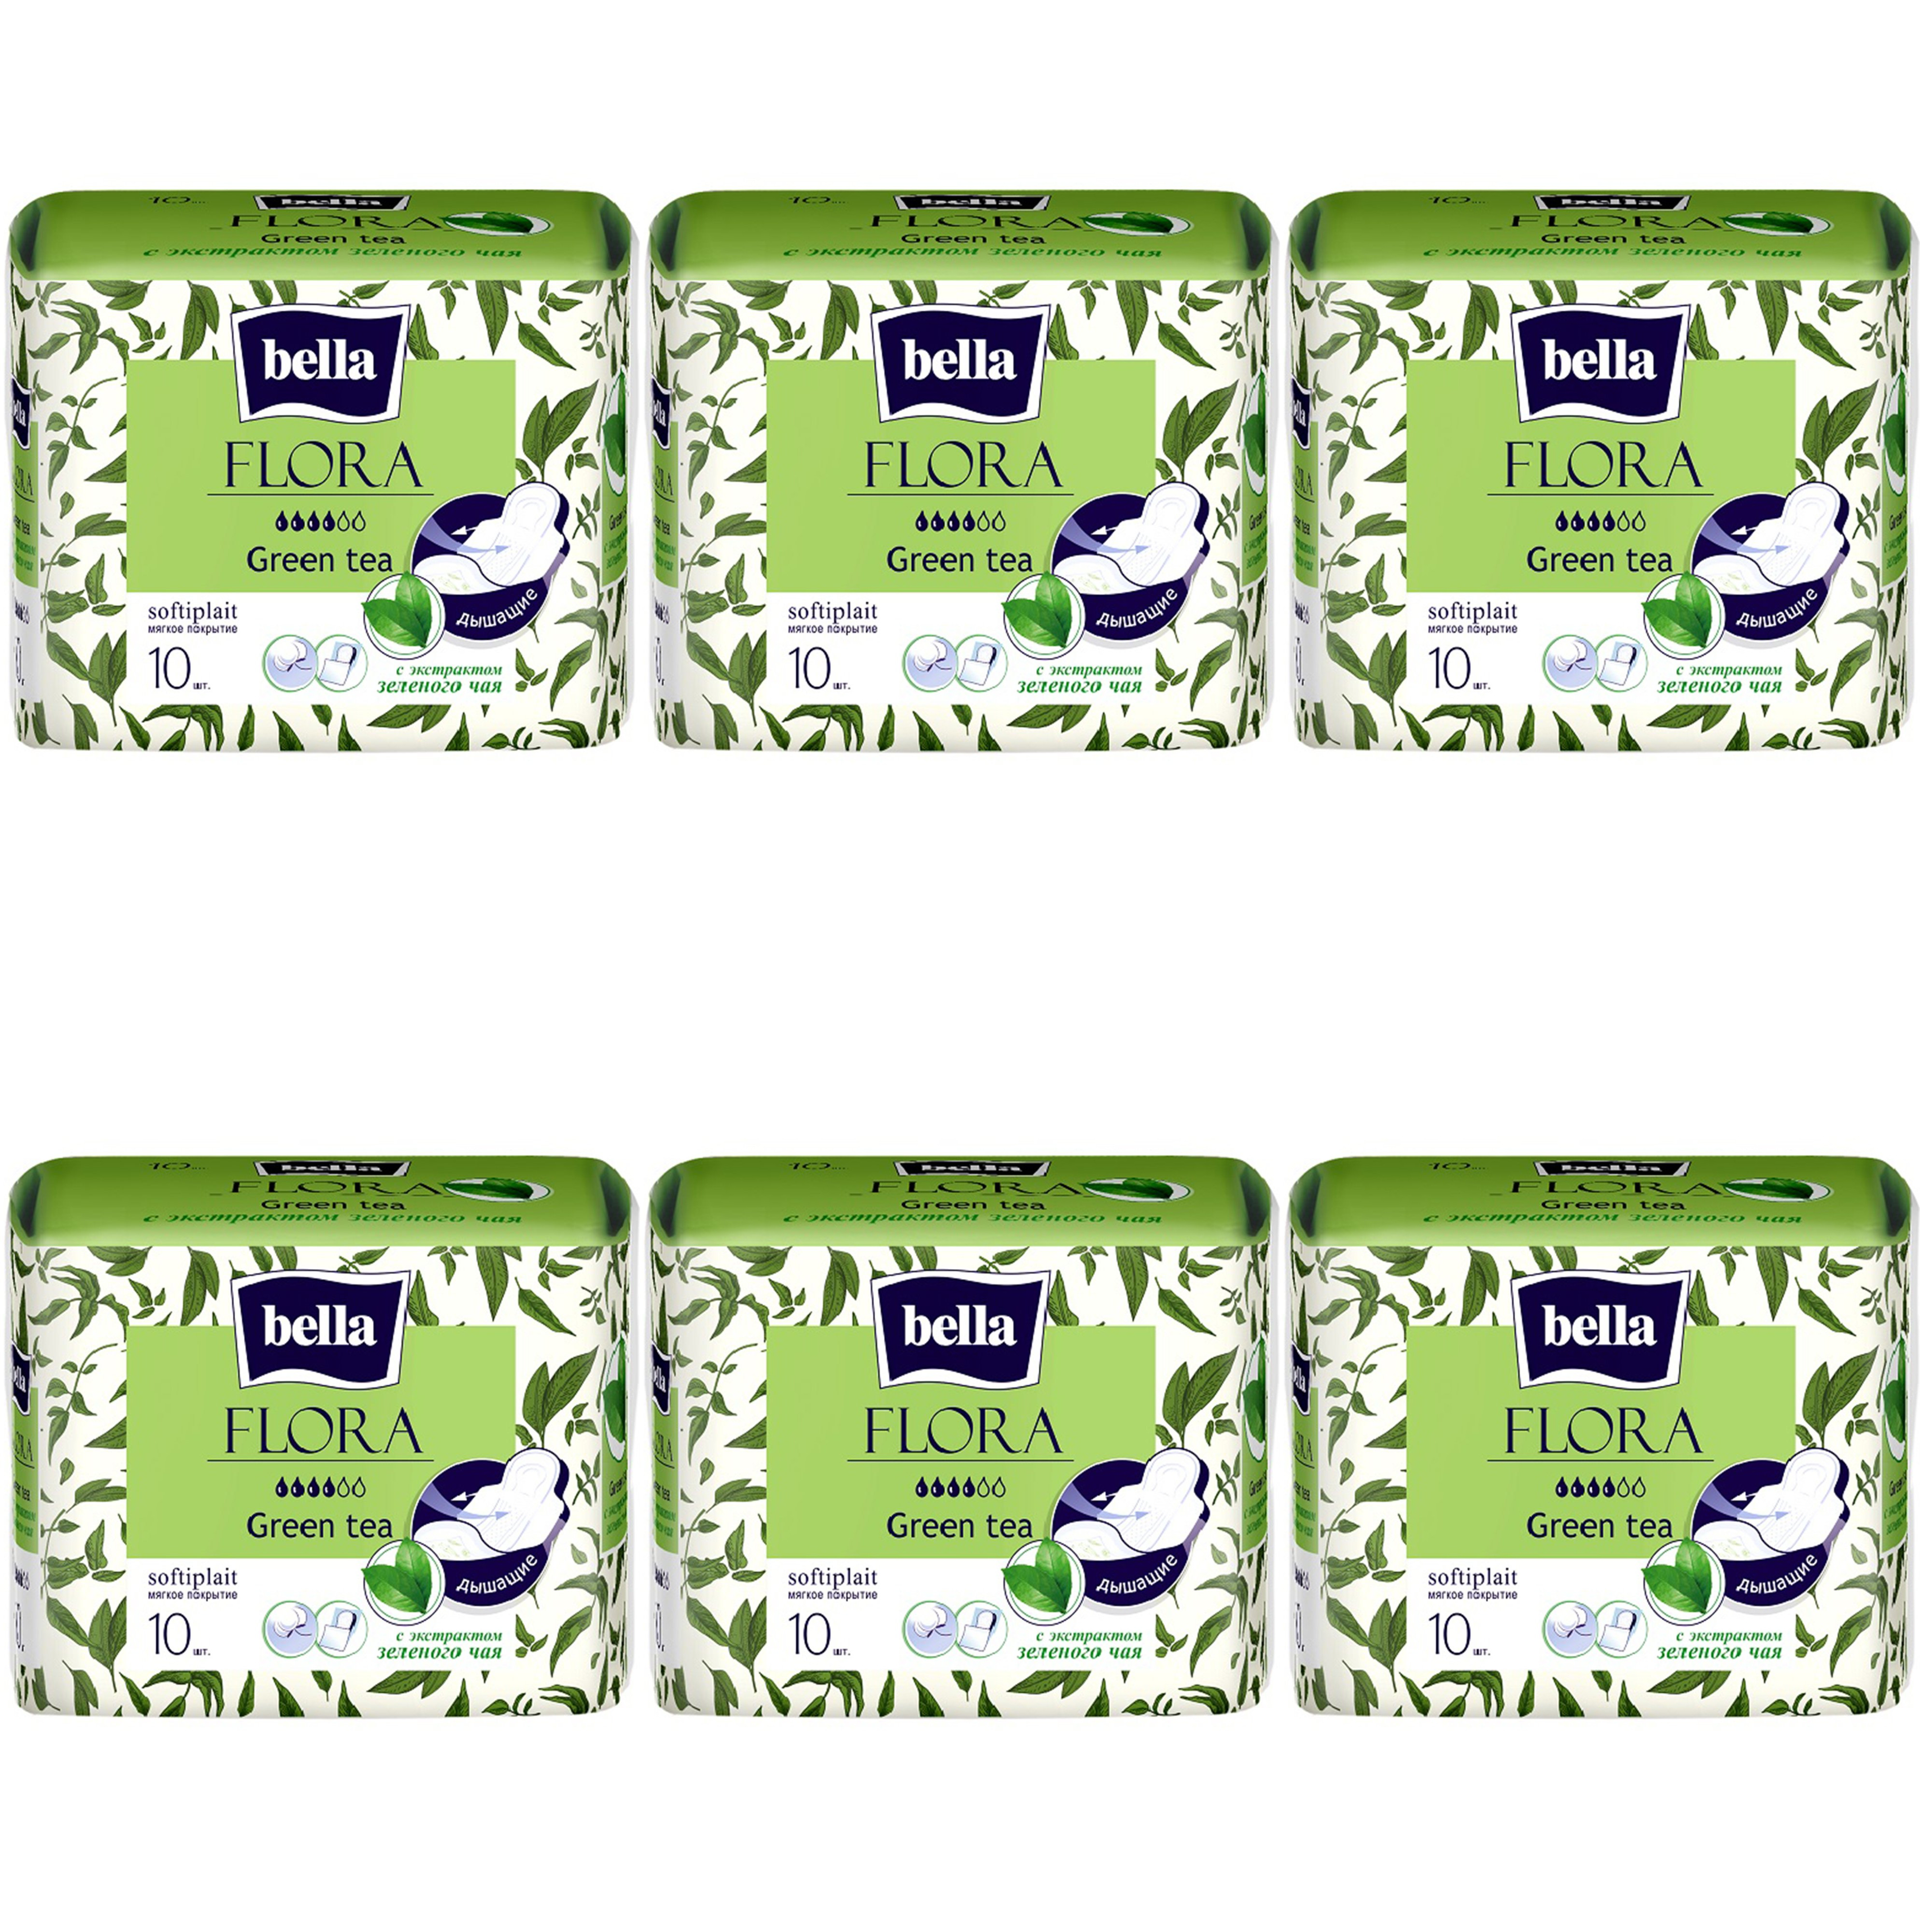 Прокладки Bella Flora Green tea, с экстрактом зеленого чая, 10шт. х 6уп. дневник шк динозавр иск кожа 7бц поролон блинтовое тиснение